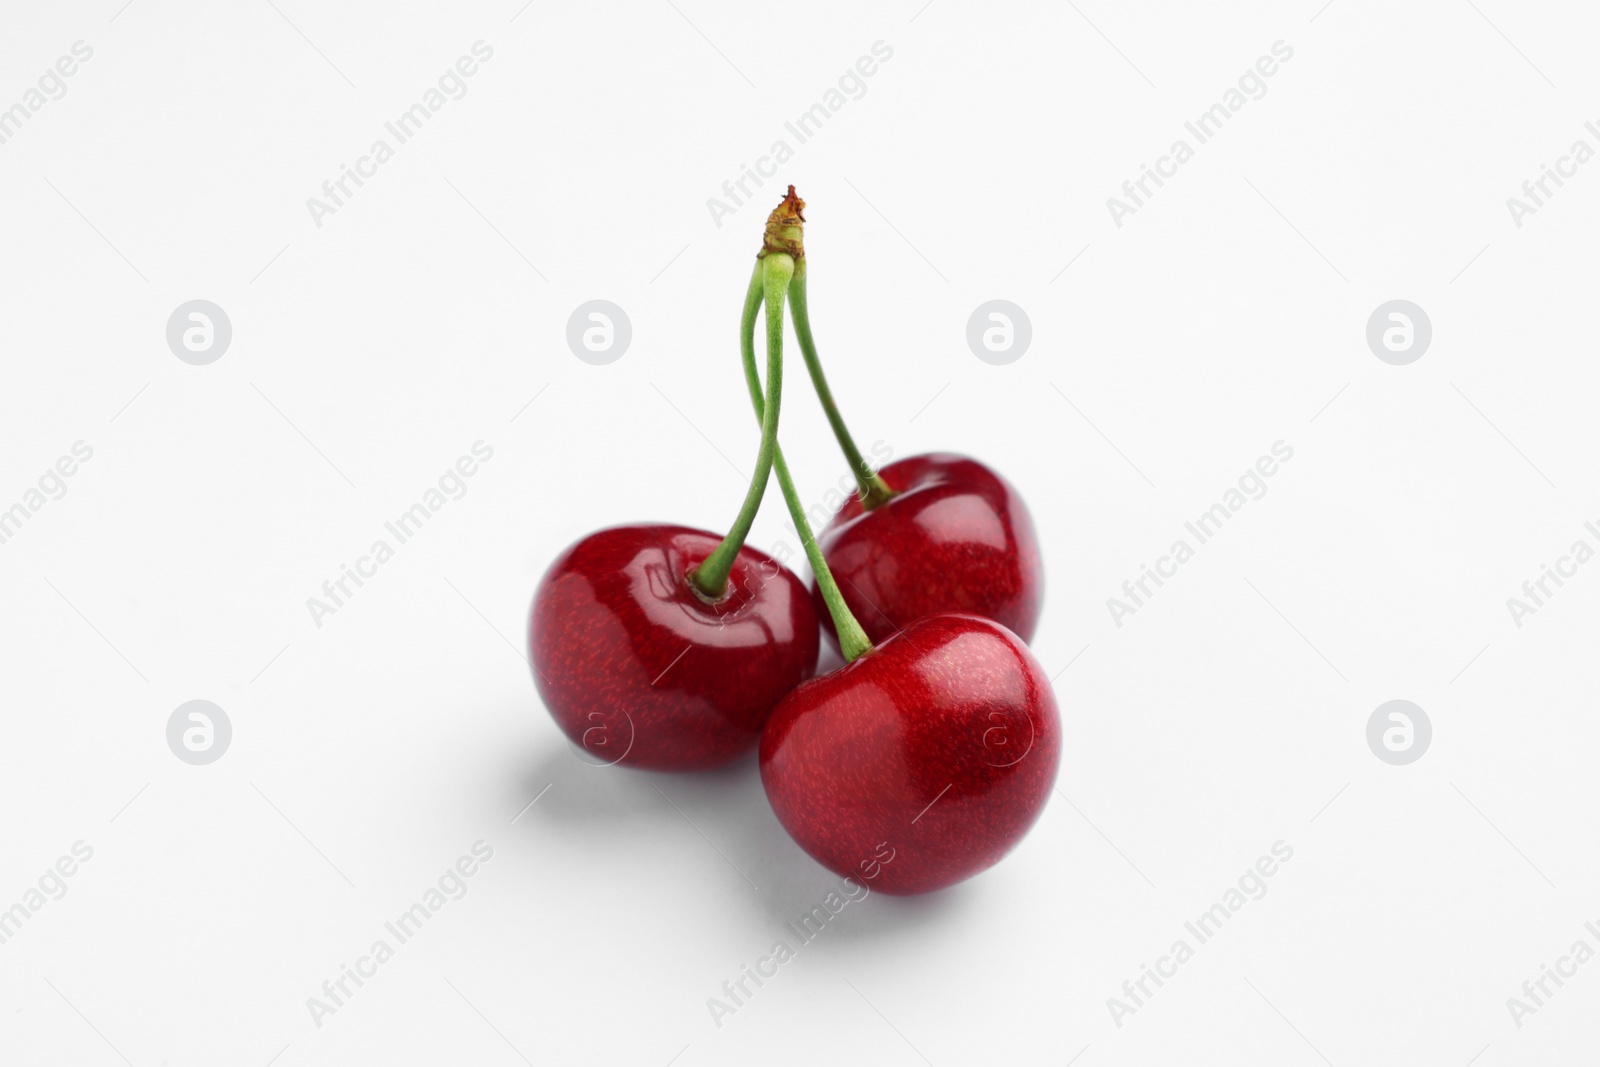 Photo of Three ripe sweet cherries on white background